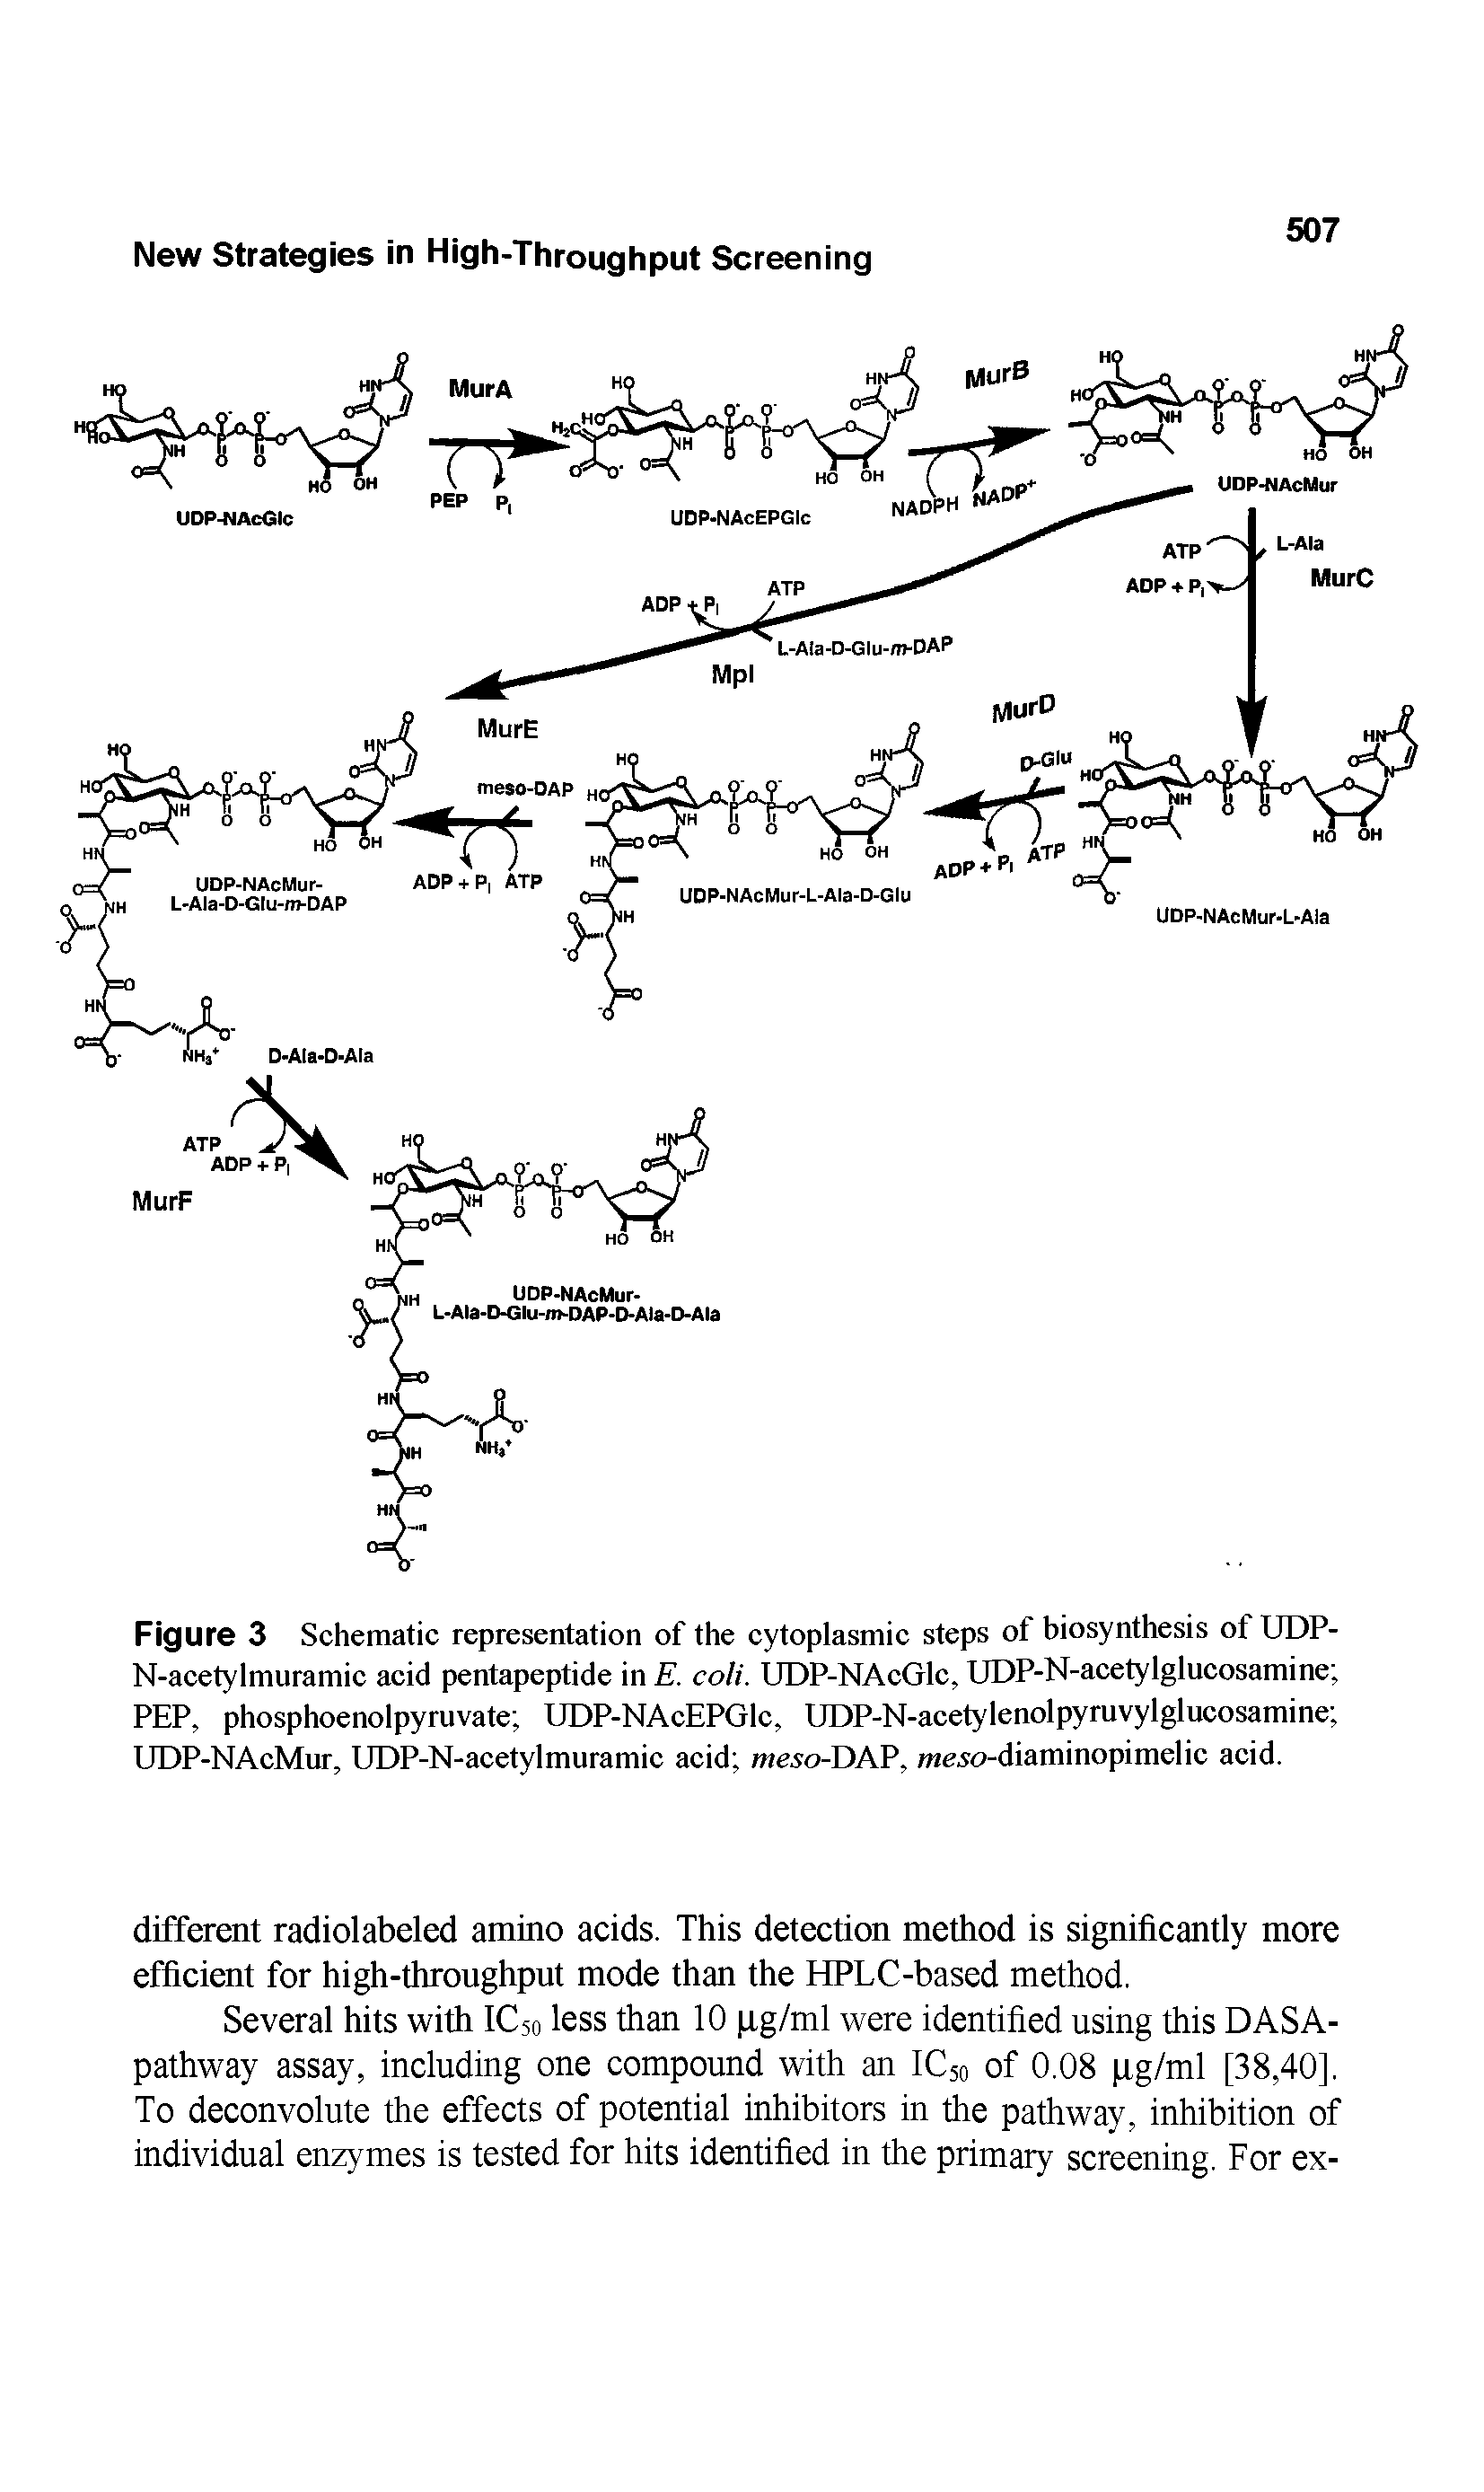 Figure 3 Schematic representation of the cytoplasmic steps of biosynthesis of UDP-N-acetylmuramic acid pentapeptide in E. coli. UDP-NAcGlc, UDP-N-acetylglucosamine PEP, phosphoenolpyruvate UDP-NAcEPGlc, UDP-N-acetylenolpyruvylglucosamine UDP-NAcMur, UDP-N-acetylmuramic acid meso-DAV, meso-diaminopimelic acid.